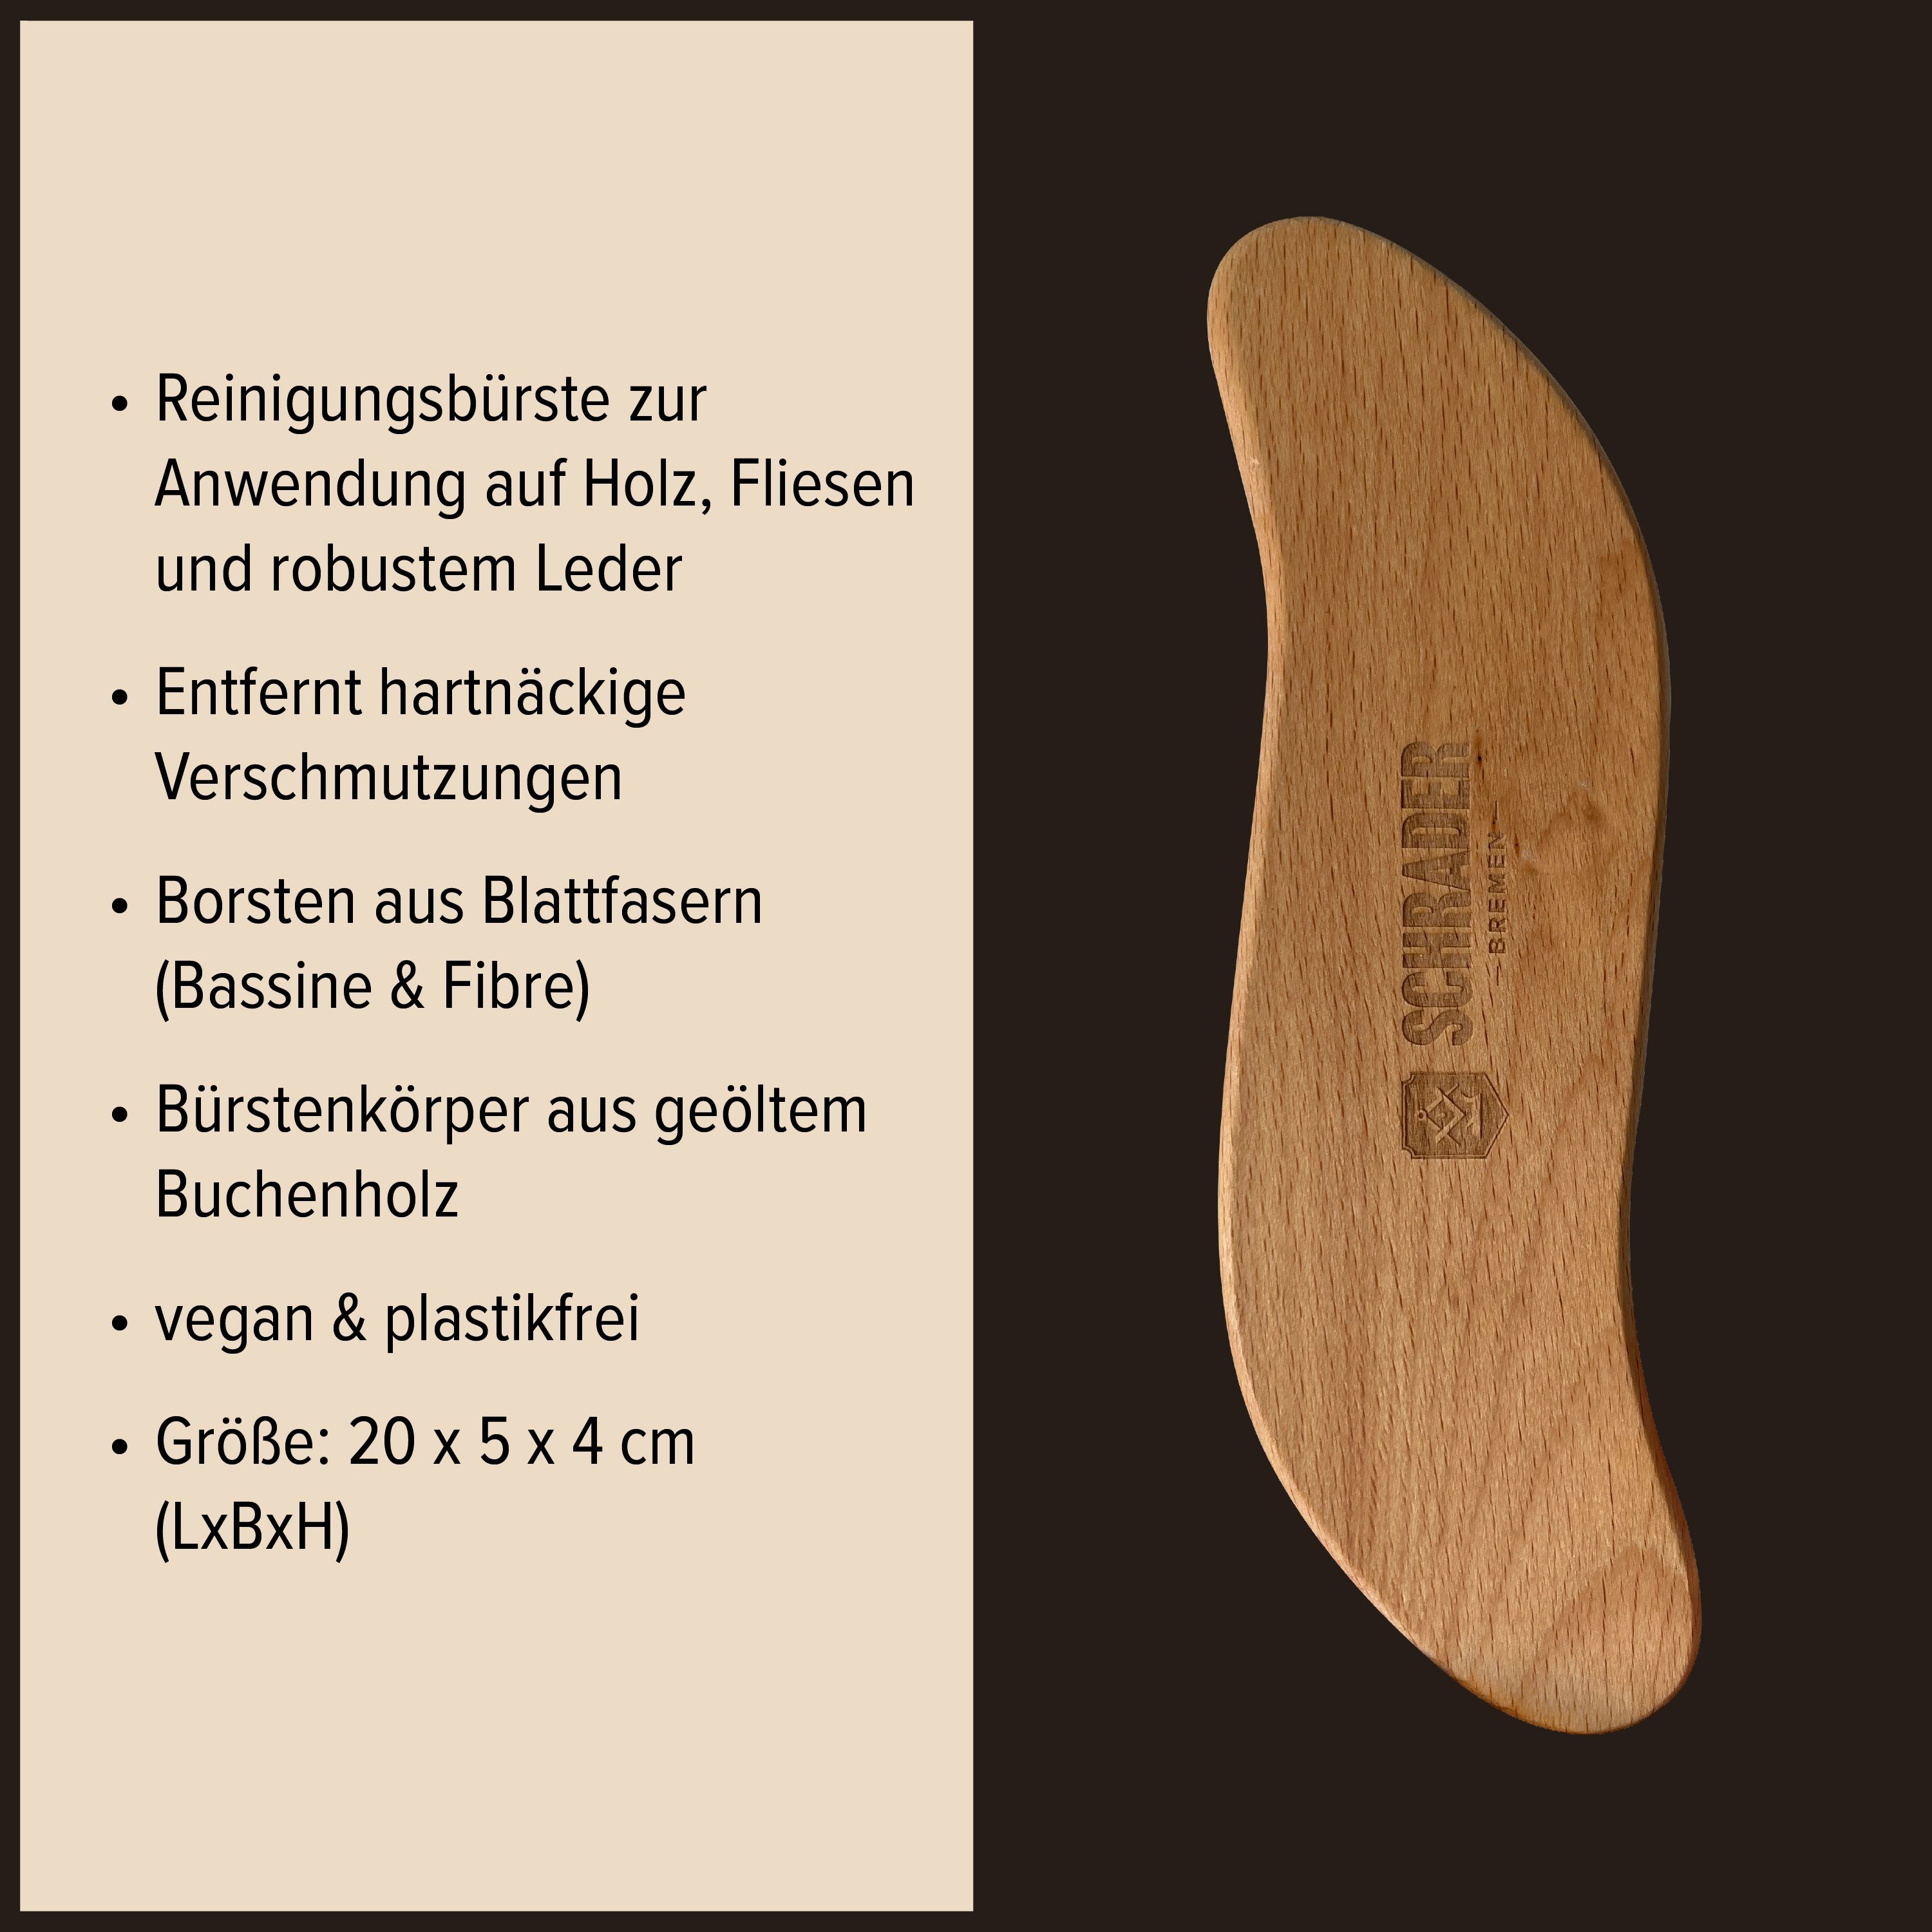 - in - Lederschuhe 4-teilig - für Pflegeset Lederreiniger Made strapazierte Schrader Wanderstiefel (Lederpflege Germany)